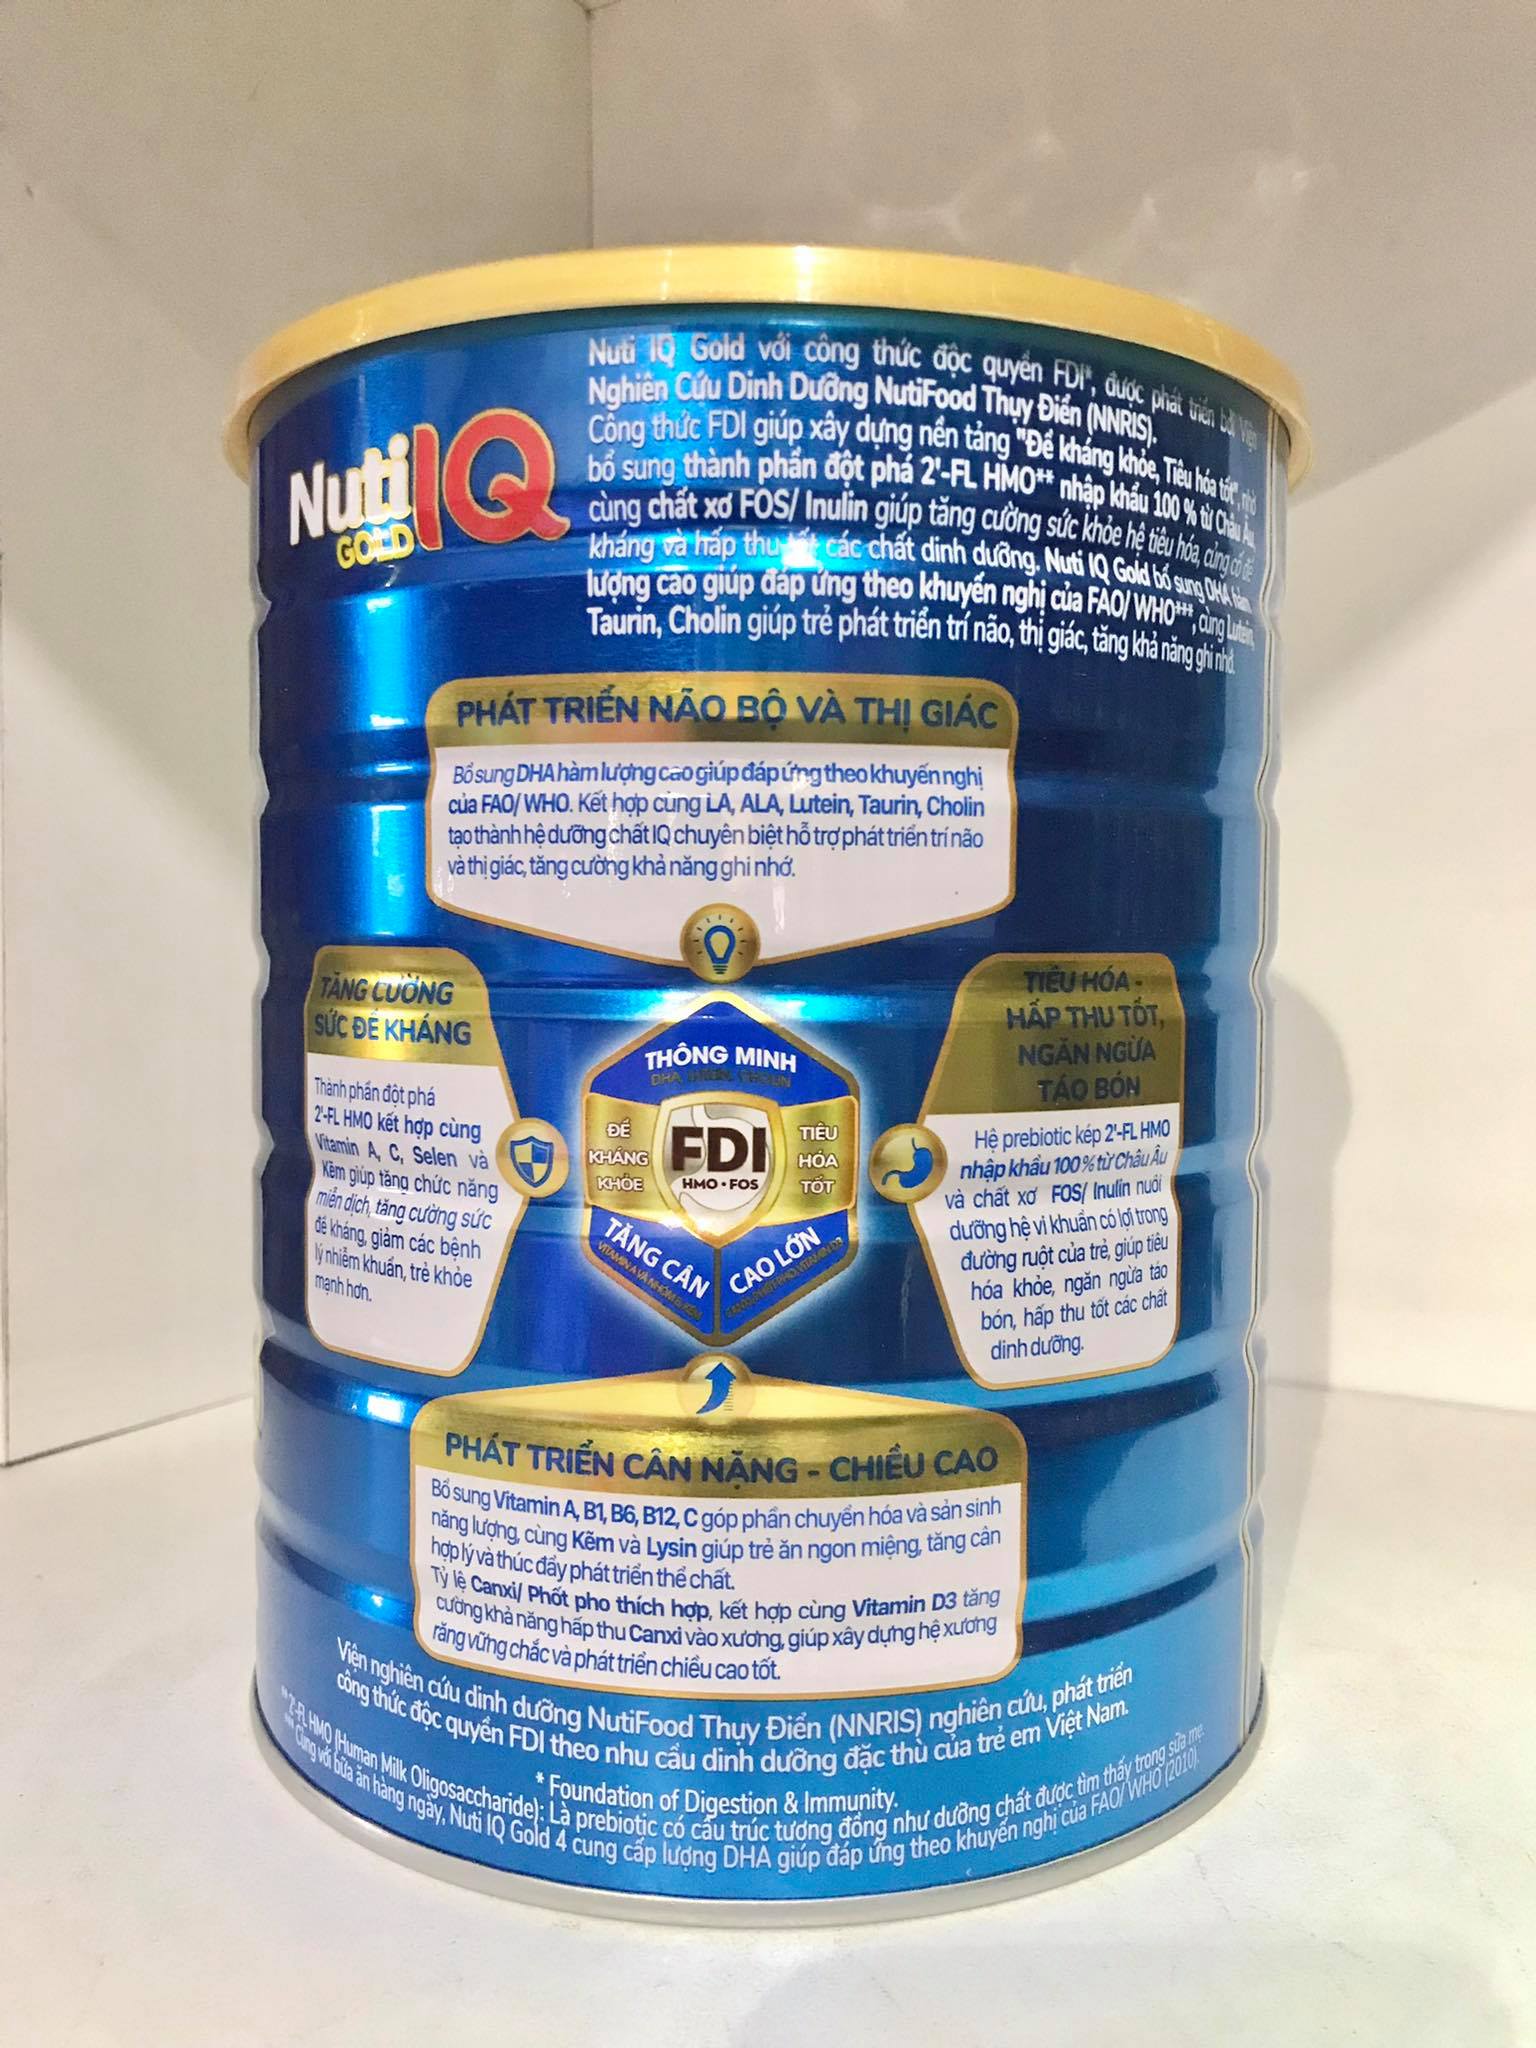 Sữa Nuti IQ Gold 4 1.5kg (mới) - Phát triển não bộ và thị giác, Tăng cường sức đề kháng, Phát triển cân nặng - chiều cao, Tiêu hoá - hấp thu tốt, Ngăn ngừa táo bón